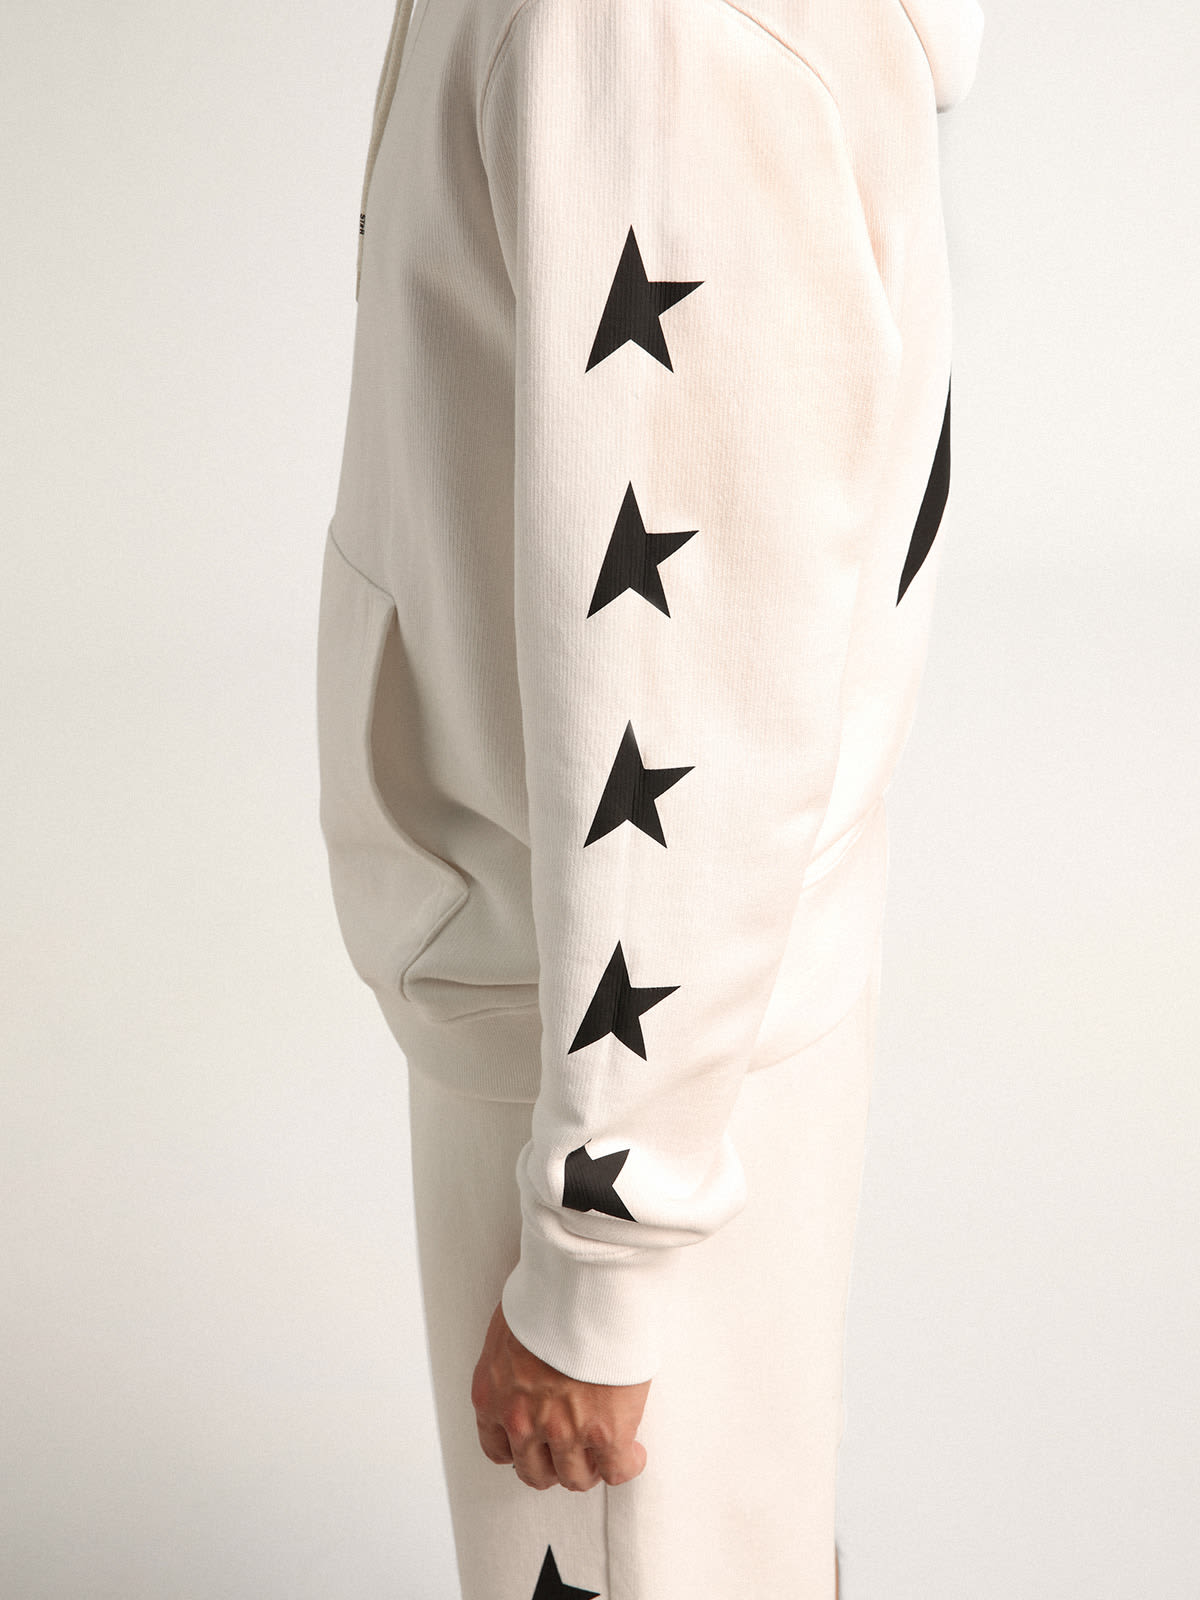 Golden Goose - Sweat-shirt à capuche Alighiero collection Star de couleur blanc vintage avec étoiles noires contrastées in 